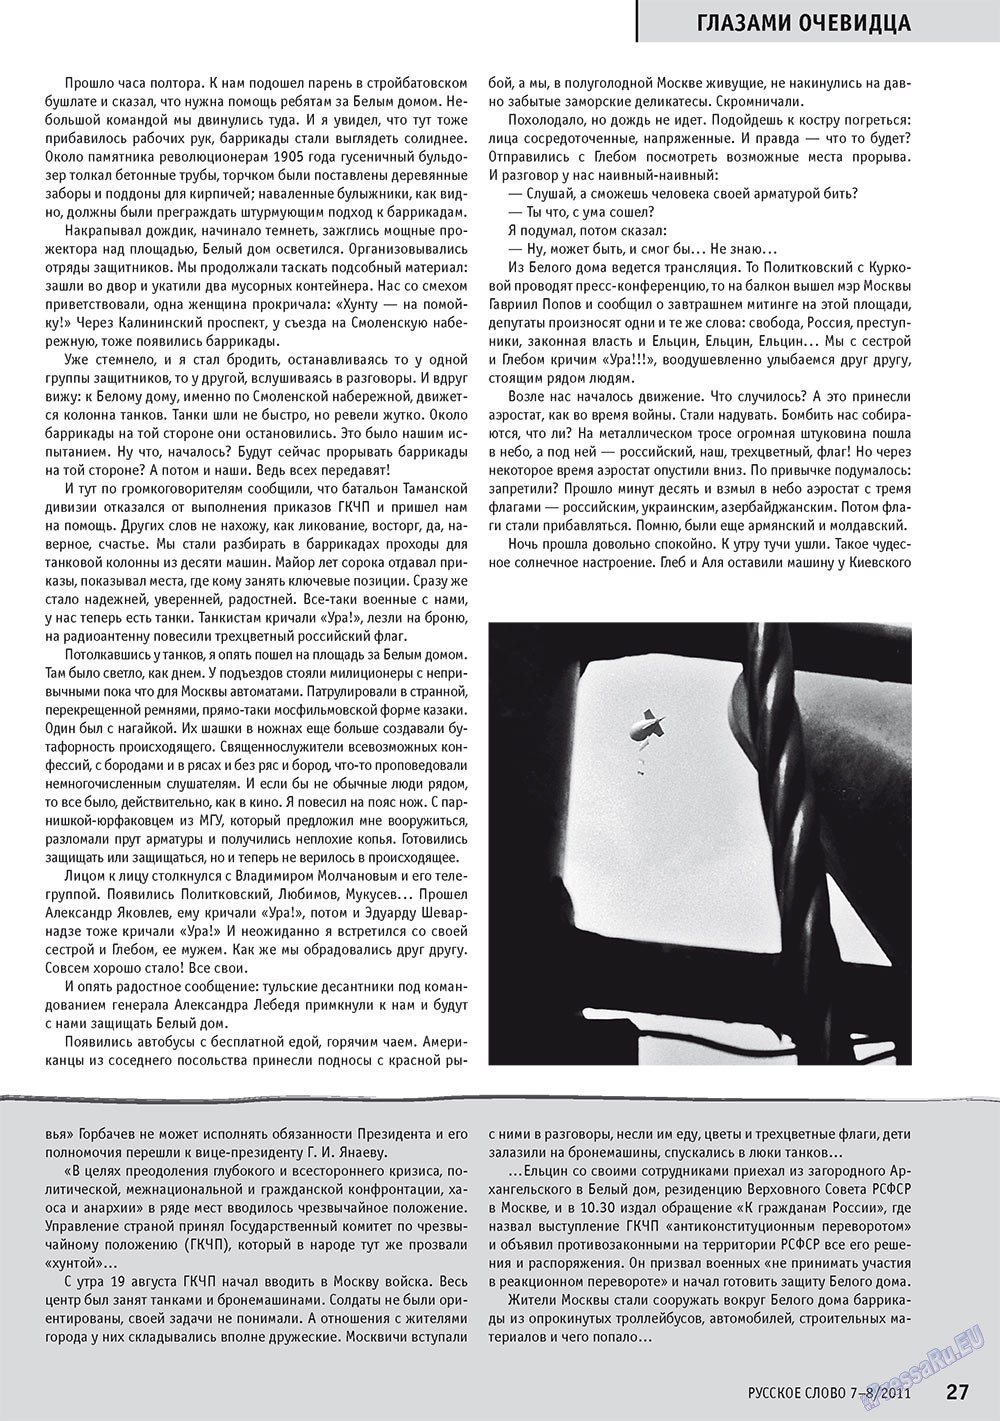 Русское слово (журнал). 2011 год, номер 7, стр. 29